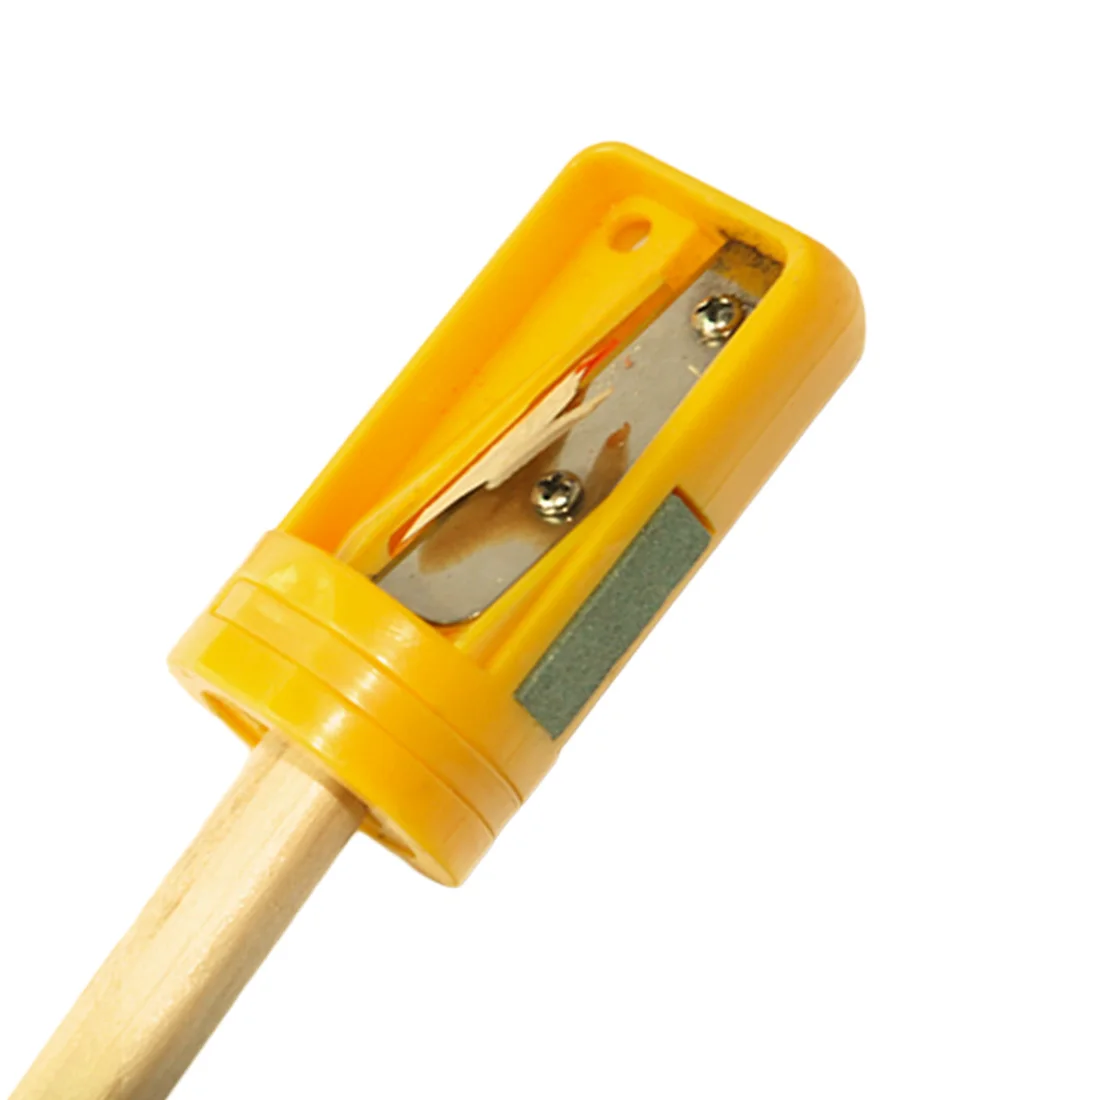 Специальная точилка для карандашей по дереву плотник точилка для карандашей Резак бритва узкая заточка инструмент для деревообработки 4 цвета